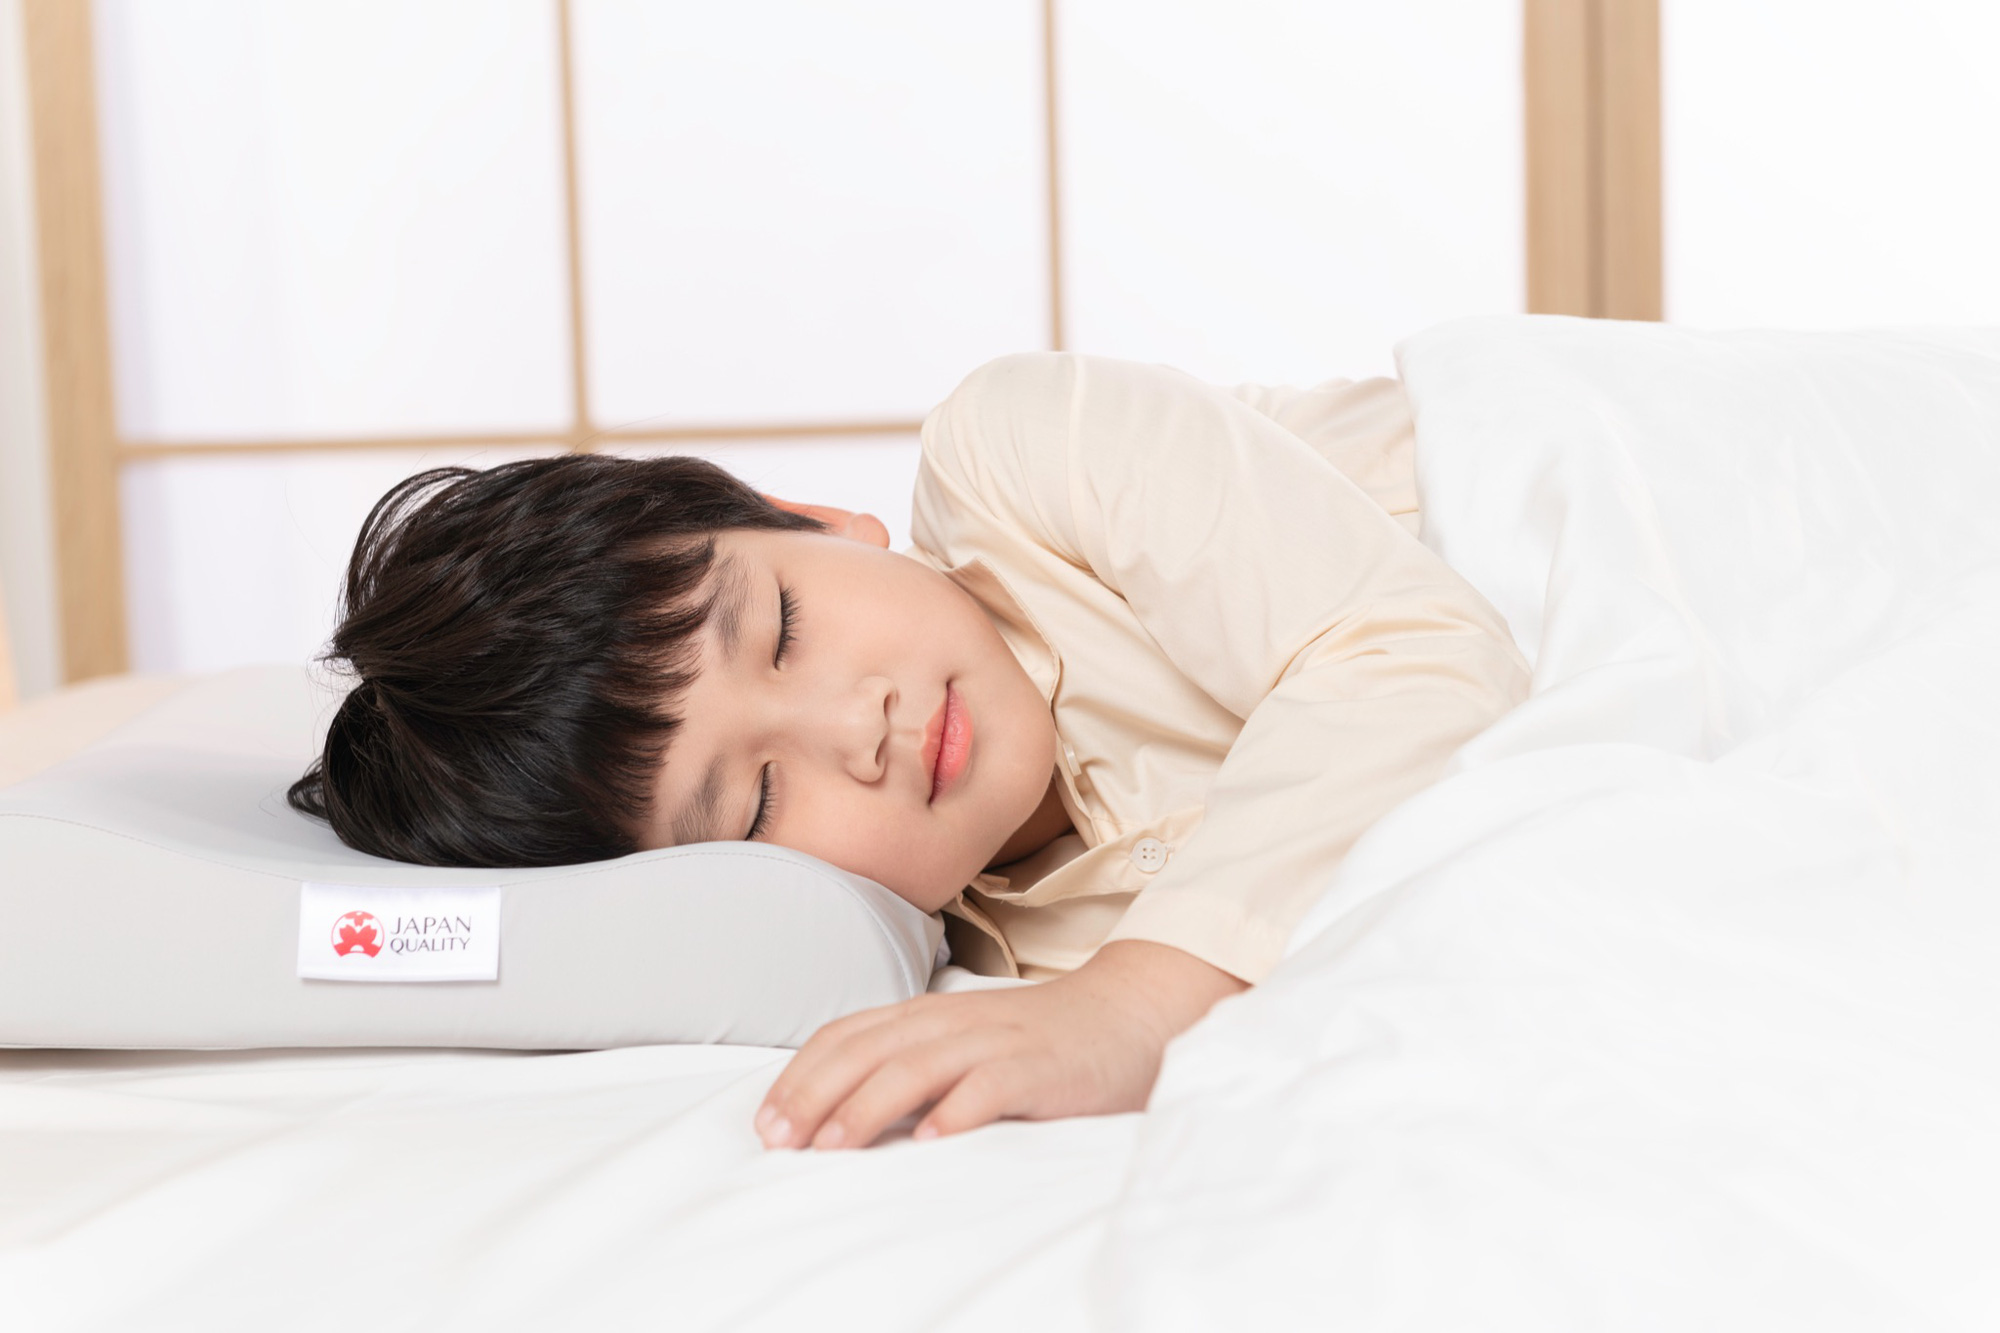 AEROFLOW ra mắt sản phẩm chăm sóc giấc ngủ dành riêng cho bé yêu - Ảnh 5.